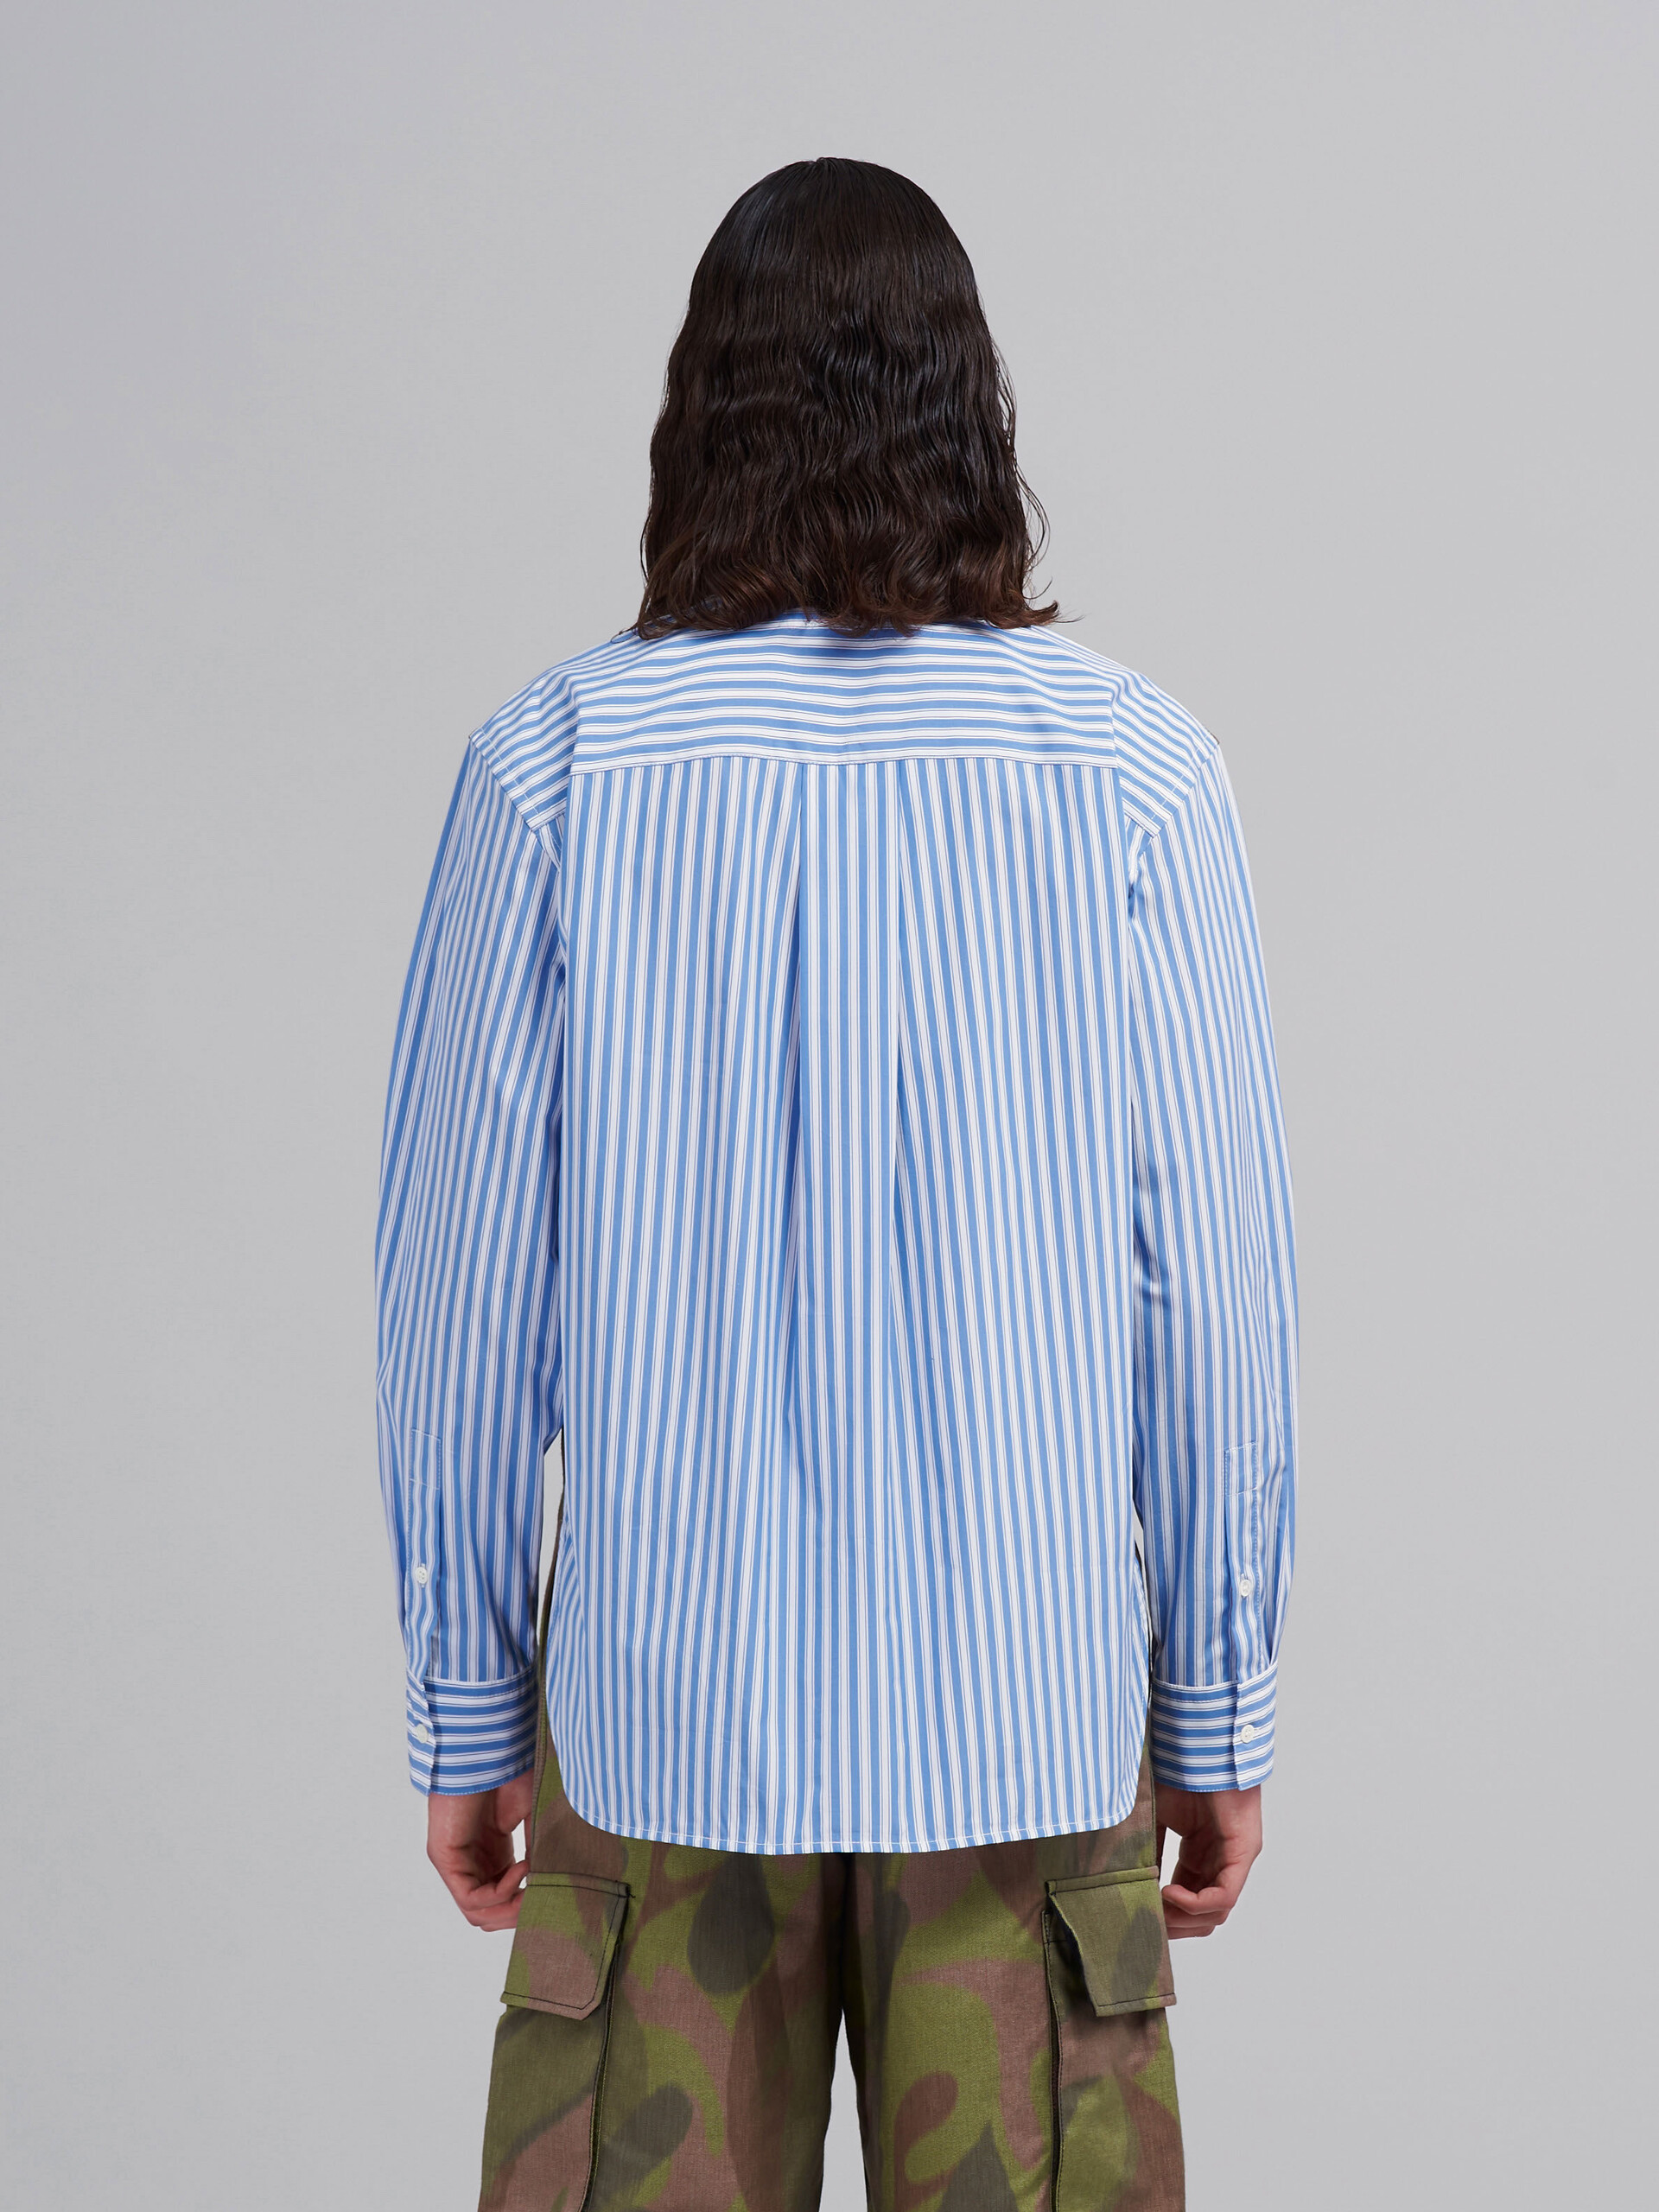 Camisa de popelina a rayas y lona - Camisas - Image 3